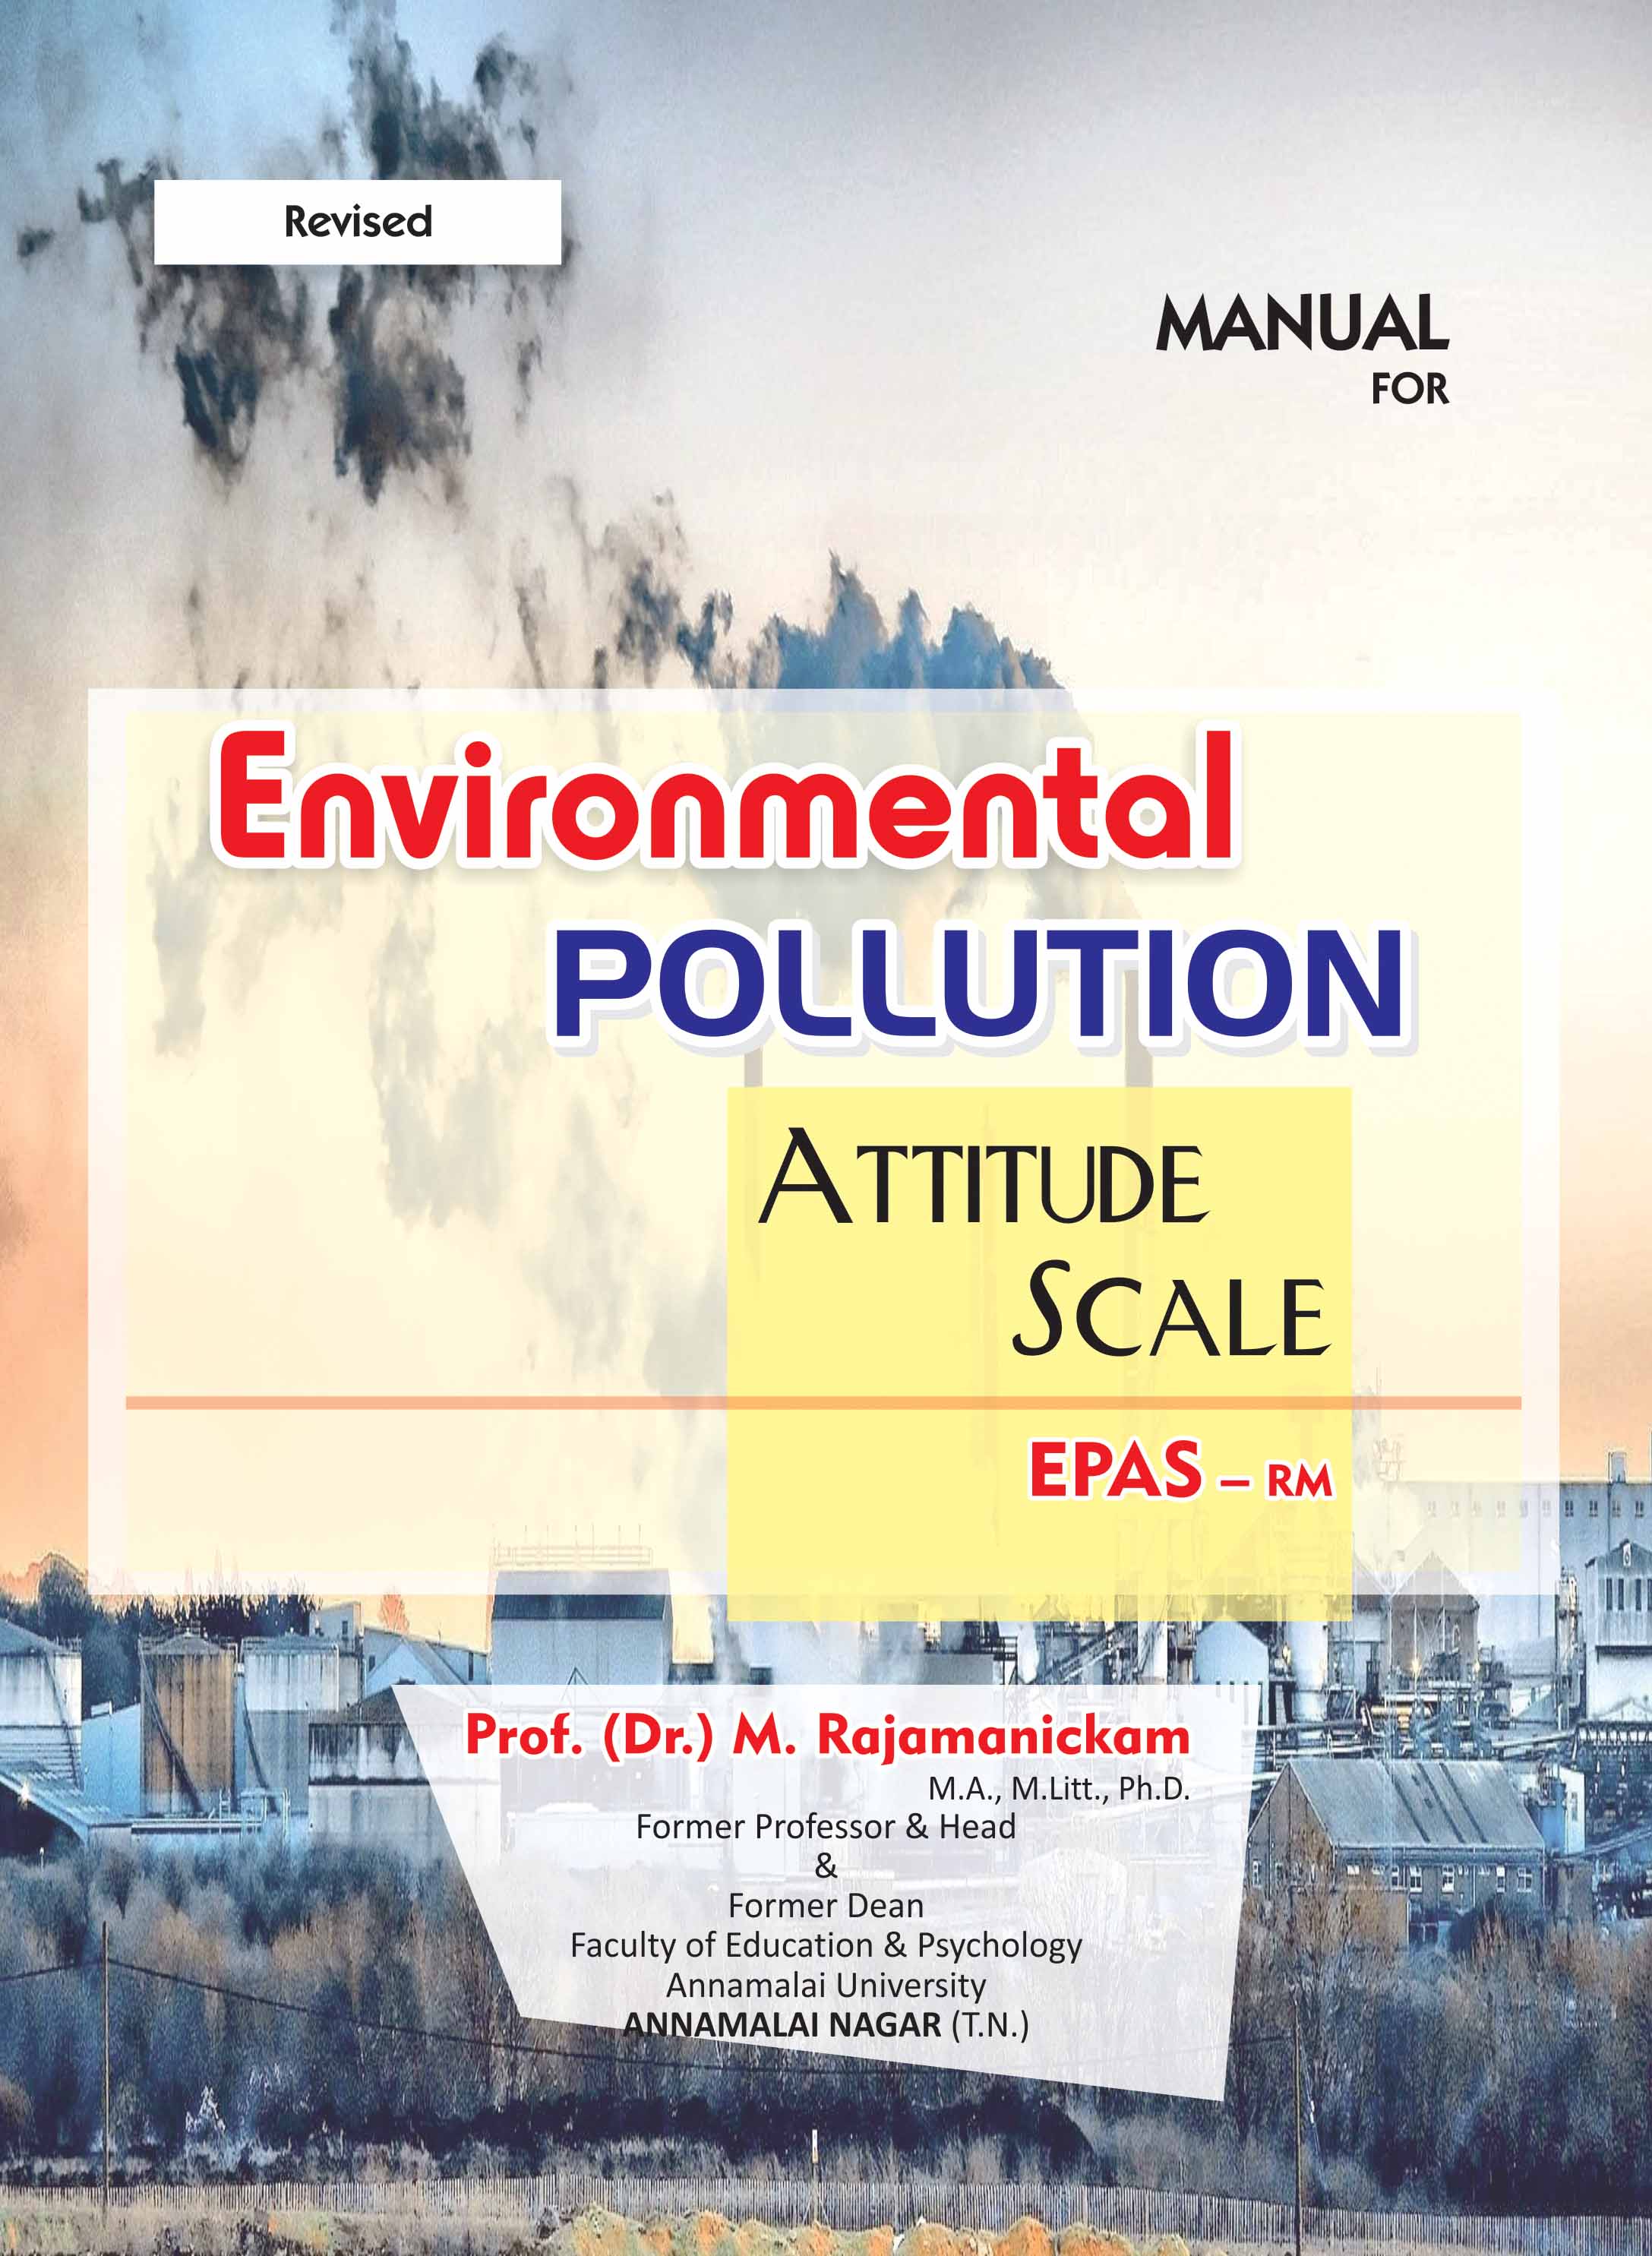 ENVIRONMENTAL-POLLUTION-ATTITUDE-SCALE